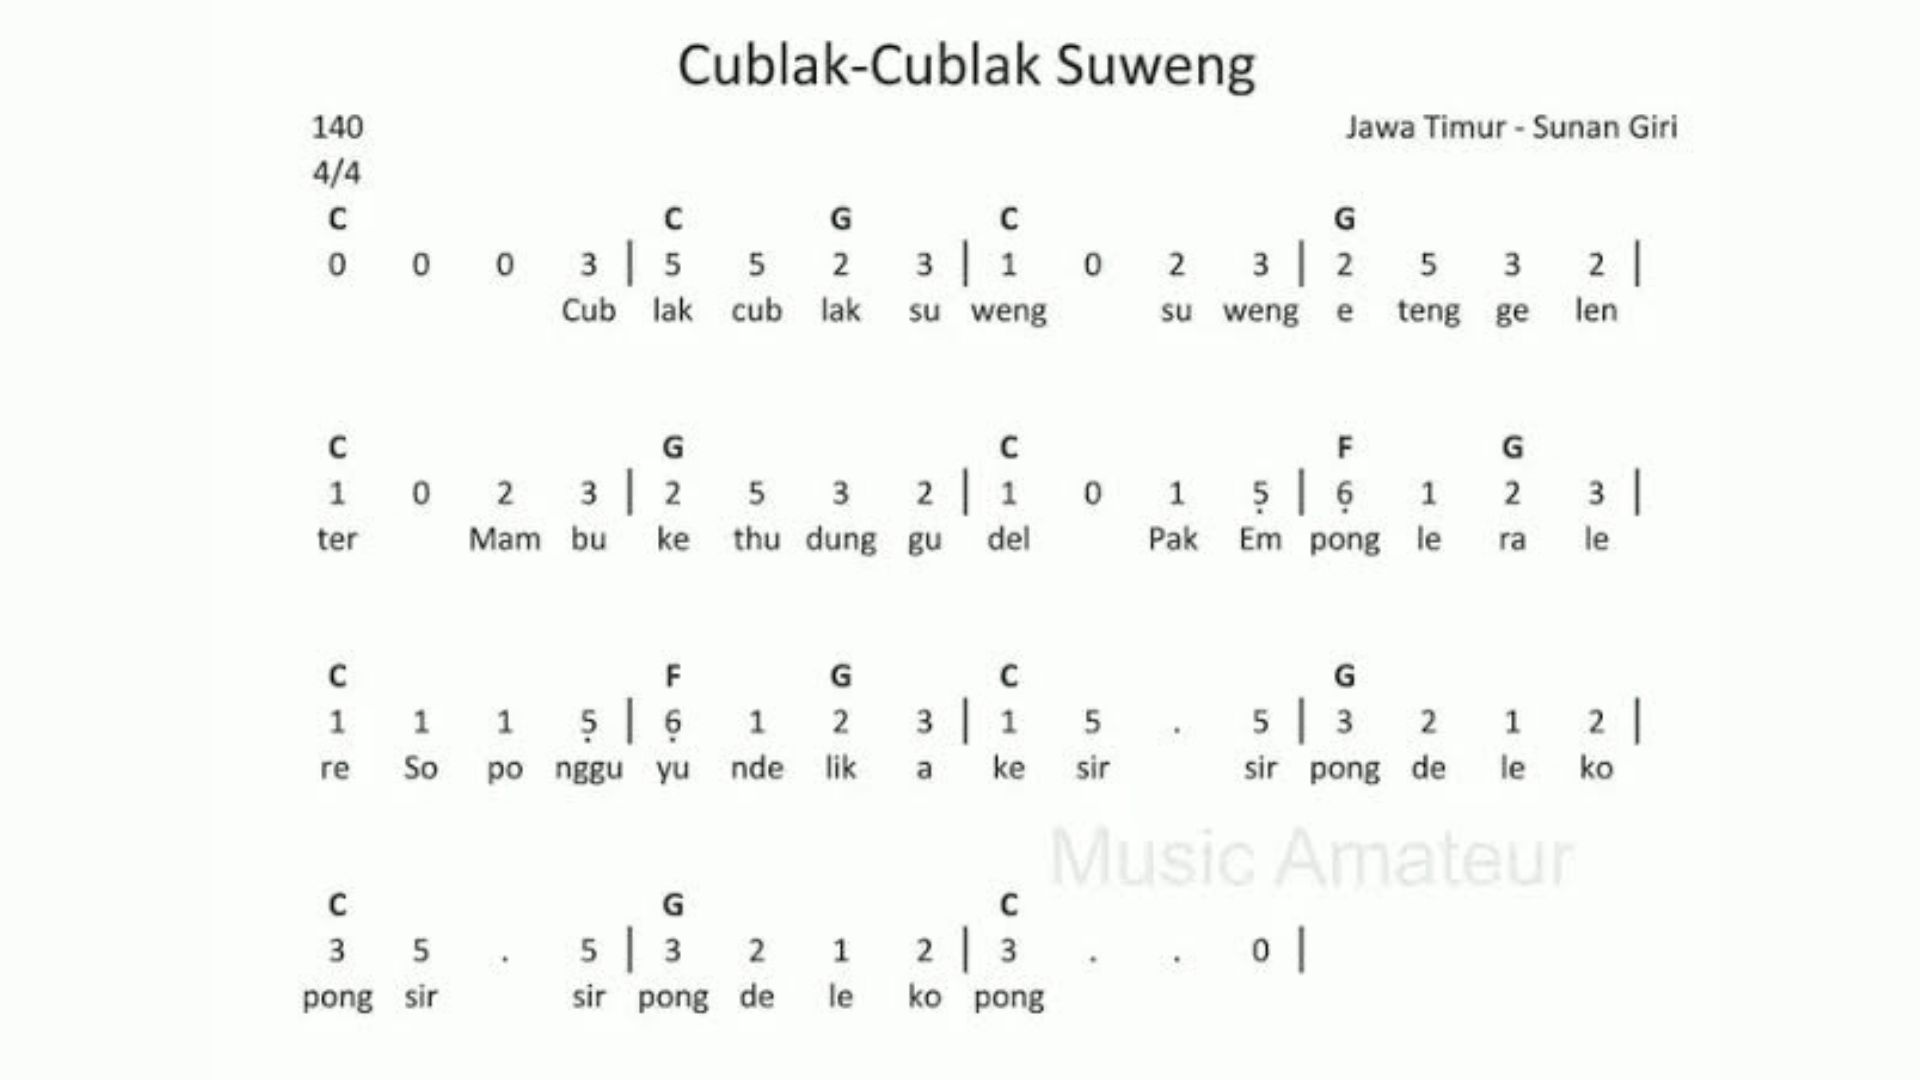 Lirik cublak cublak Suweng kerap muncul di sejumlah beranda google.